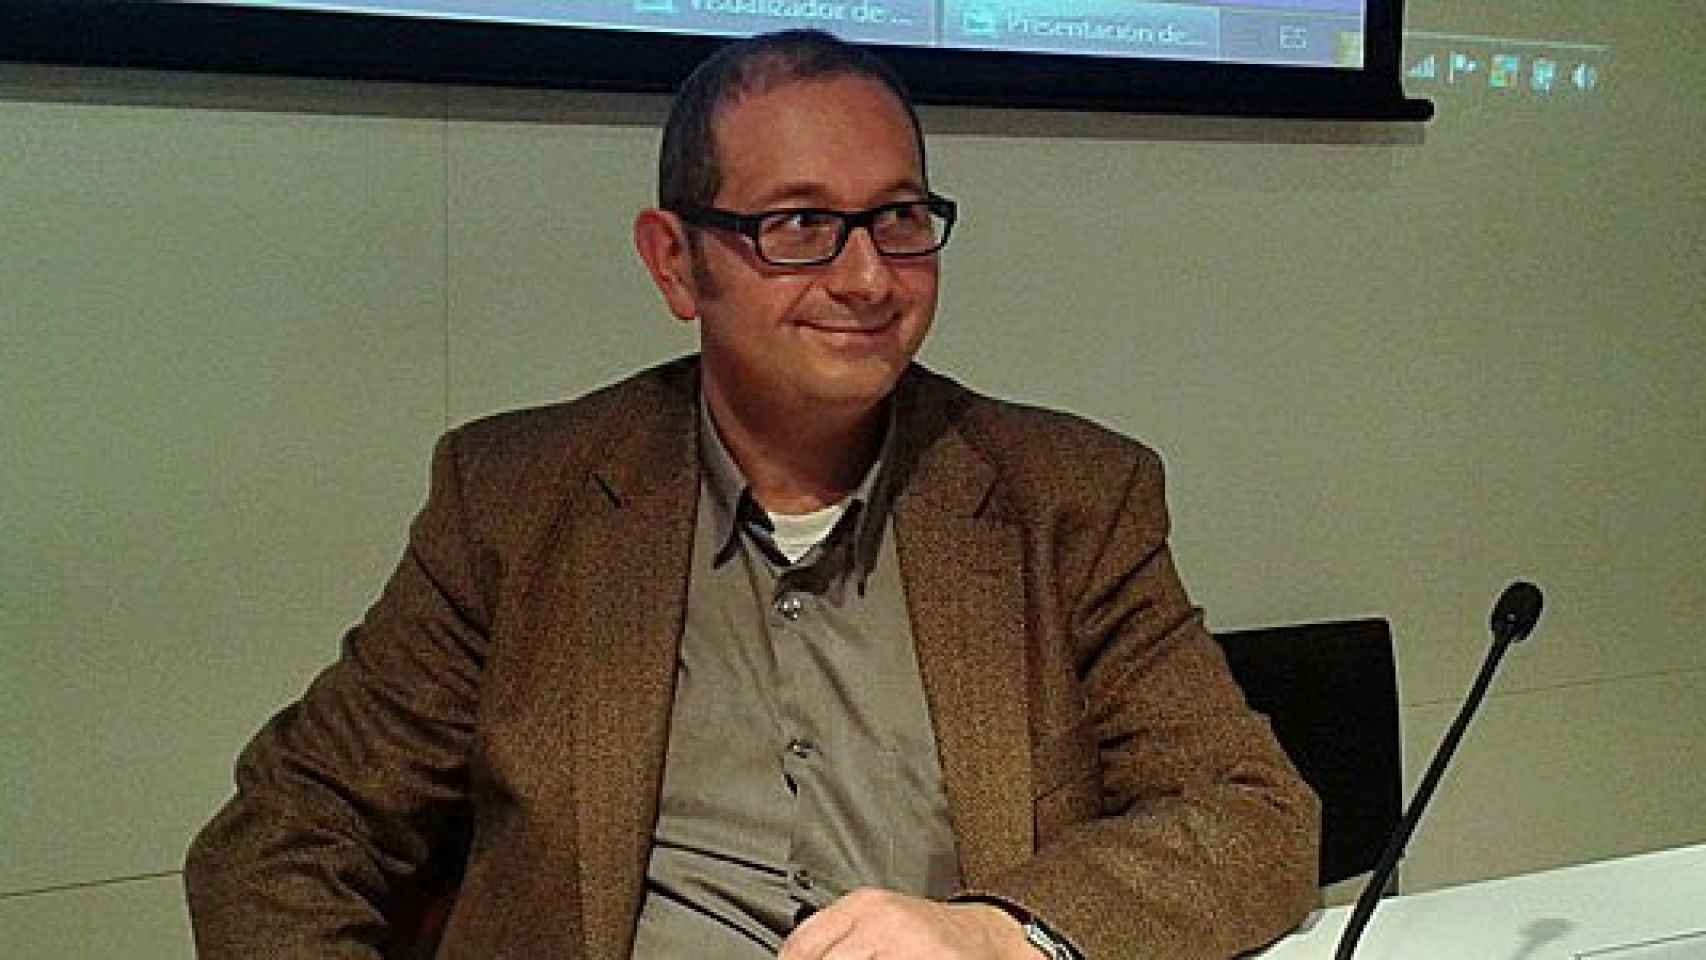 Rafael Arenas, catedrático de Derecho internacional privado en la Universidad Autónoma de Barcelona (UAB), miembro del colectivo Puerta de Brandemburgo, y vocal de la Junta Directiva de Sociedad Civil Catalana